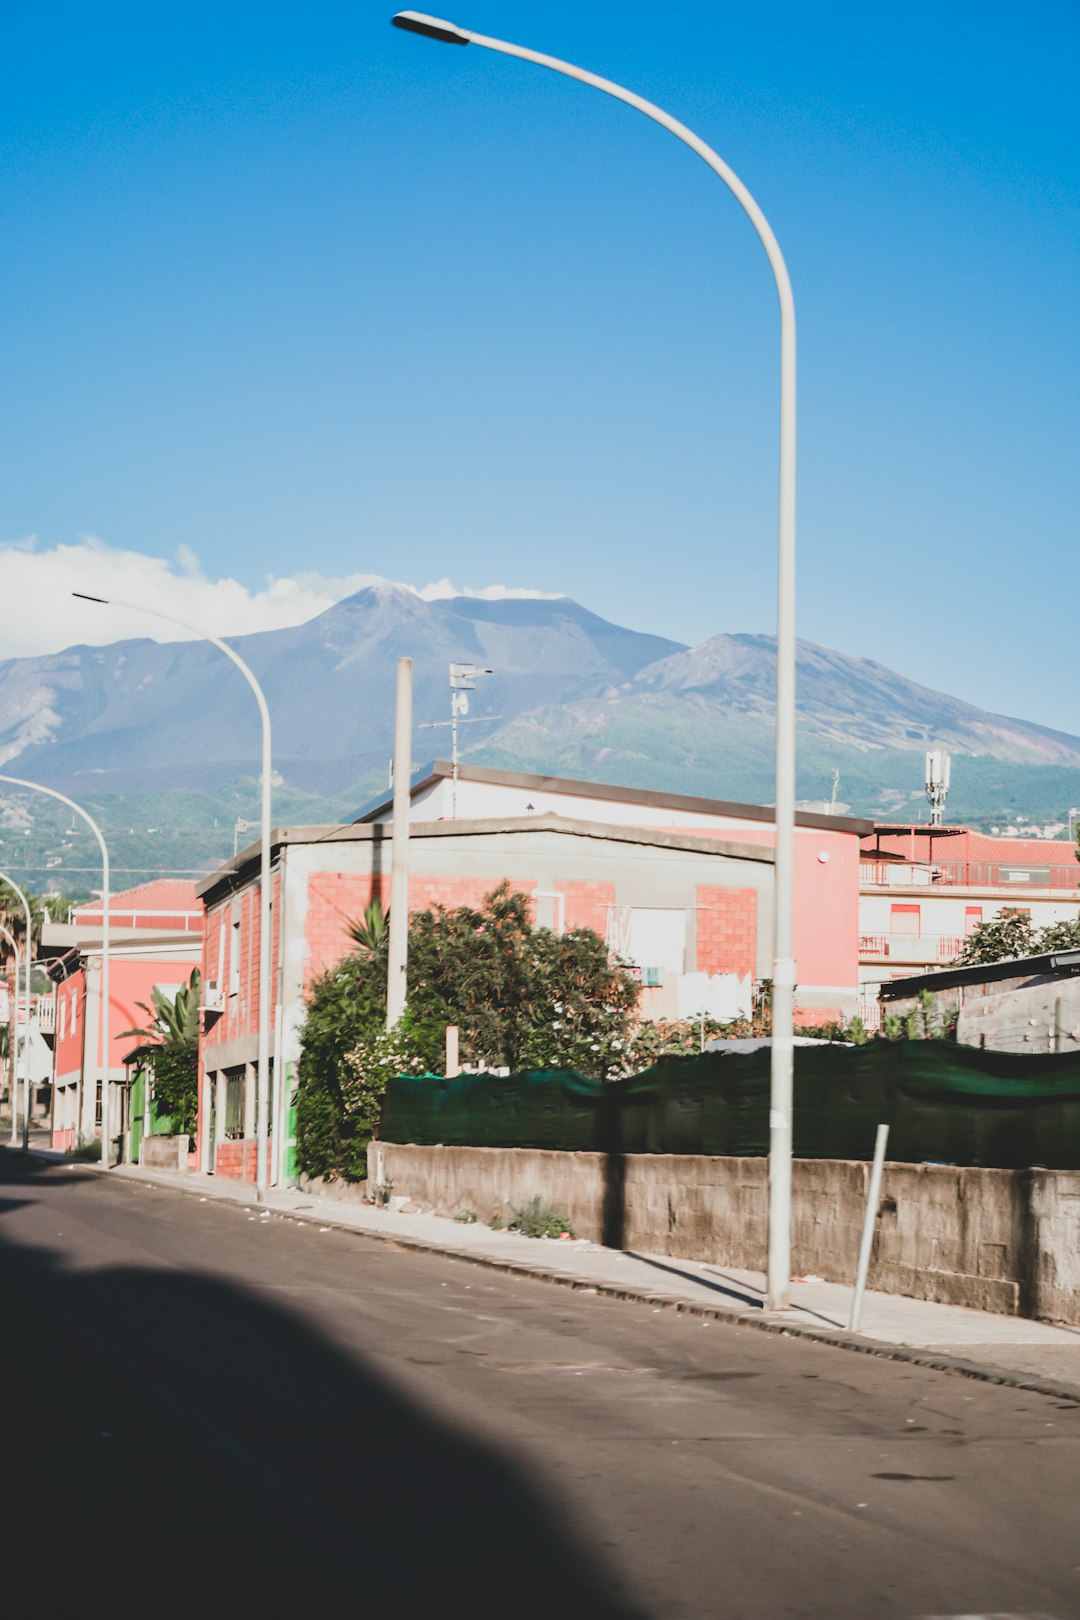 Town photo spot Mount Etna Isnello